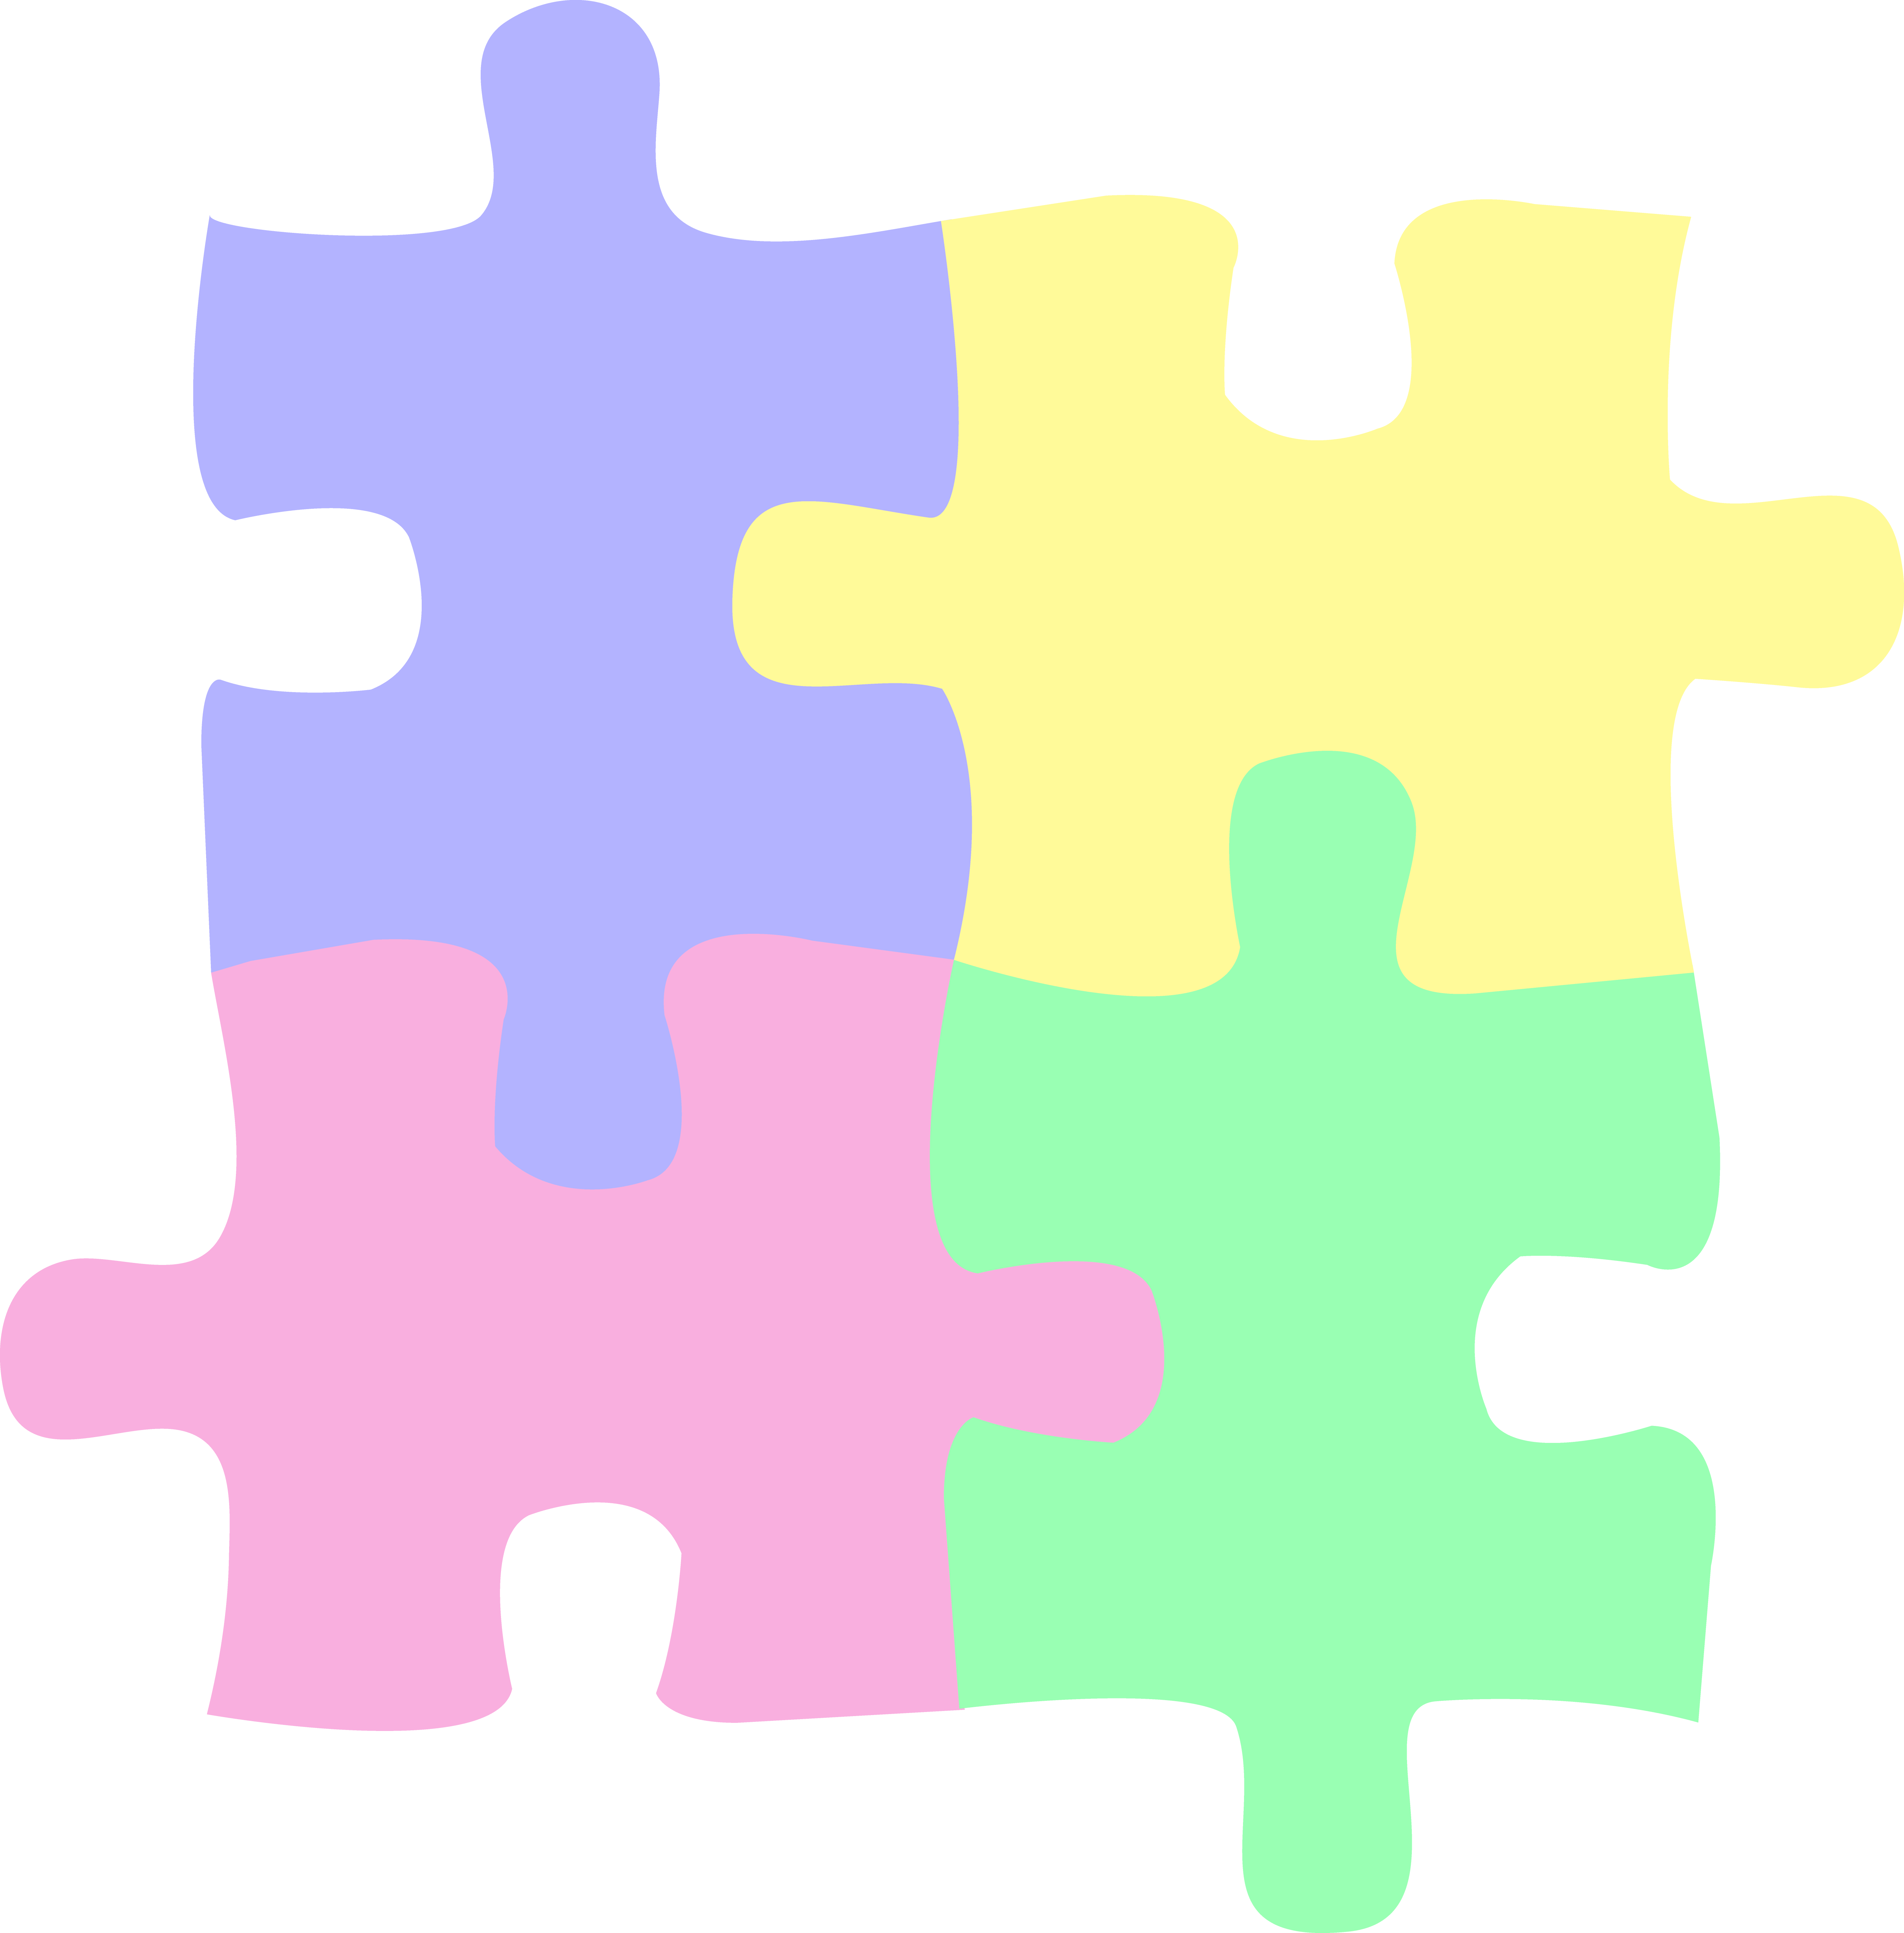 Four Pastel Colored Puzzle Pieces - Free Clip Art